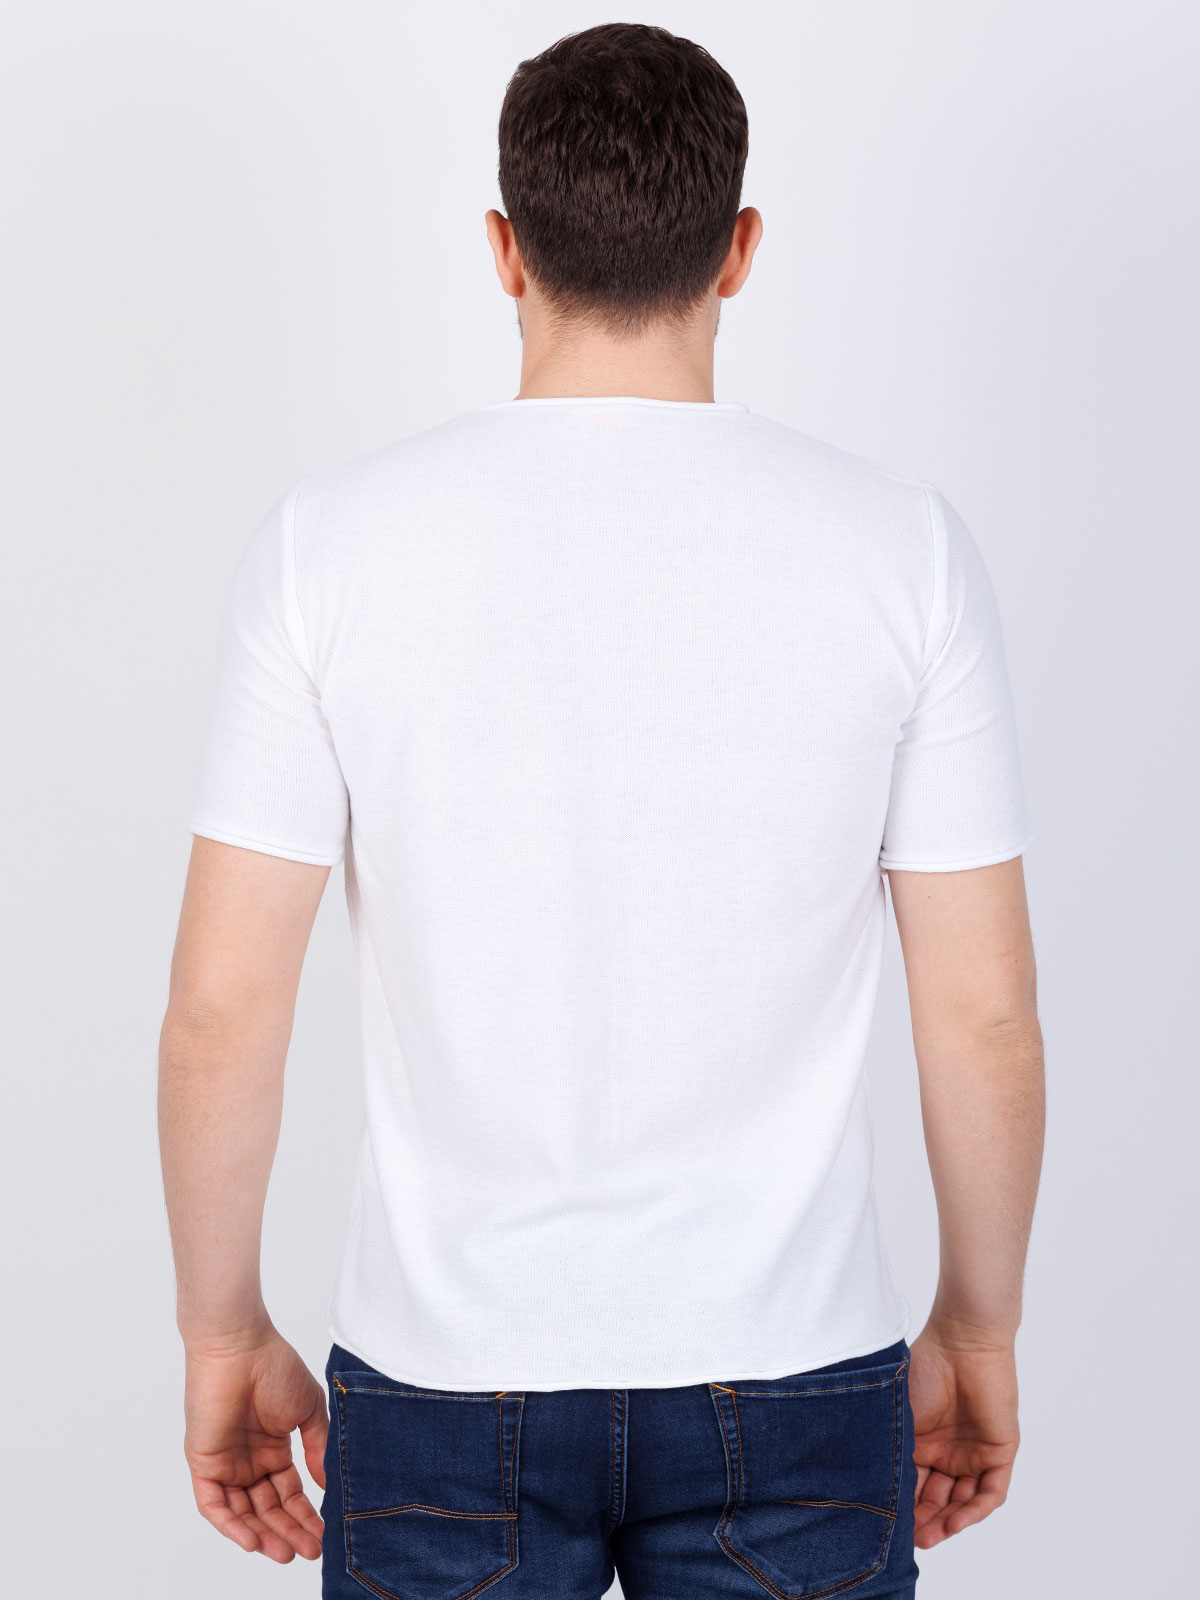 Tshirt knit  white - 86008 € 6.75 img4